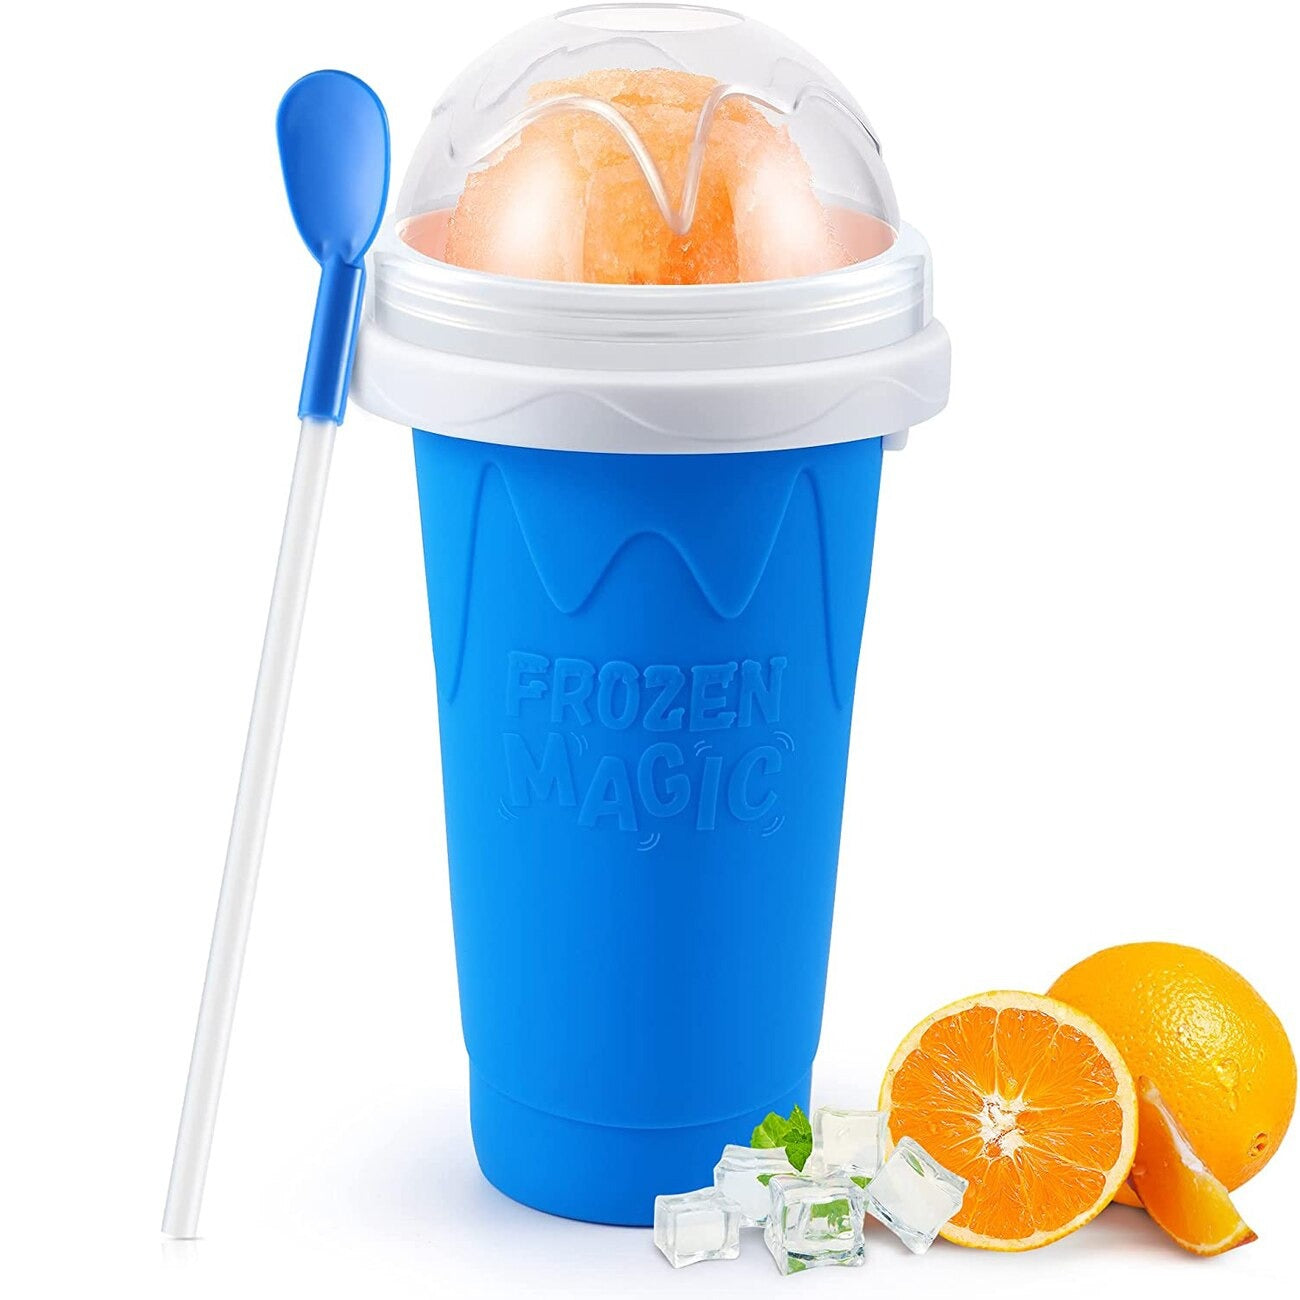 Freez™ Slushy Cup - Erfrischende Slushies oder Cocktails in Sekundenschnelle.